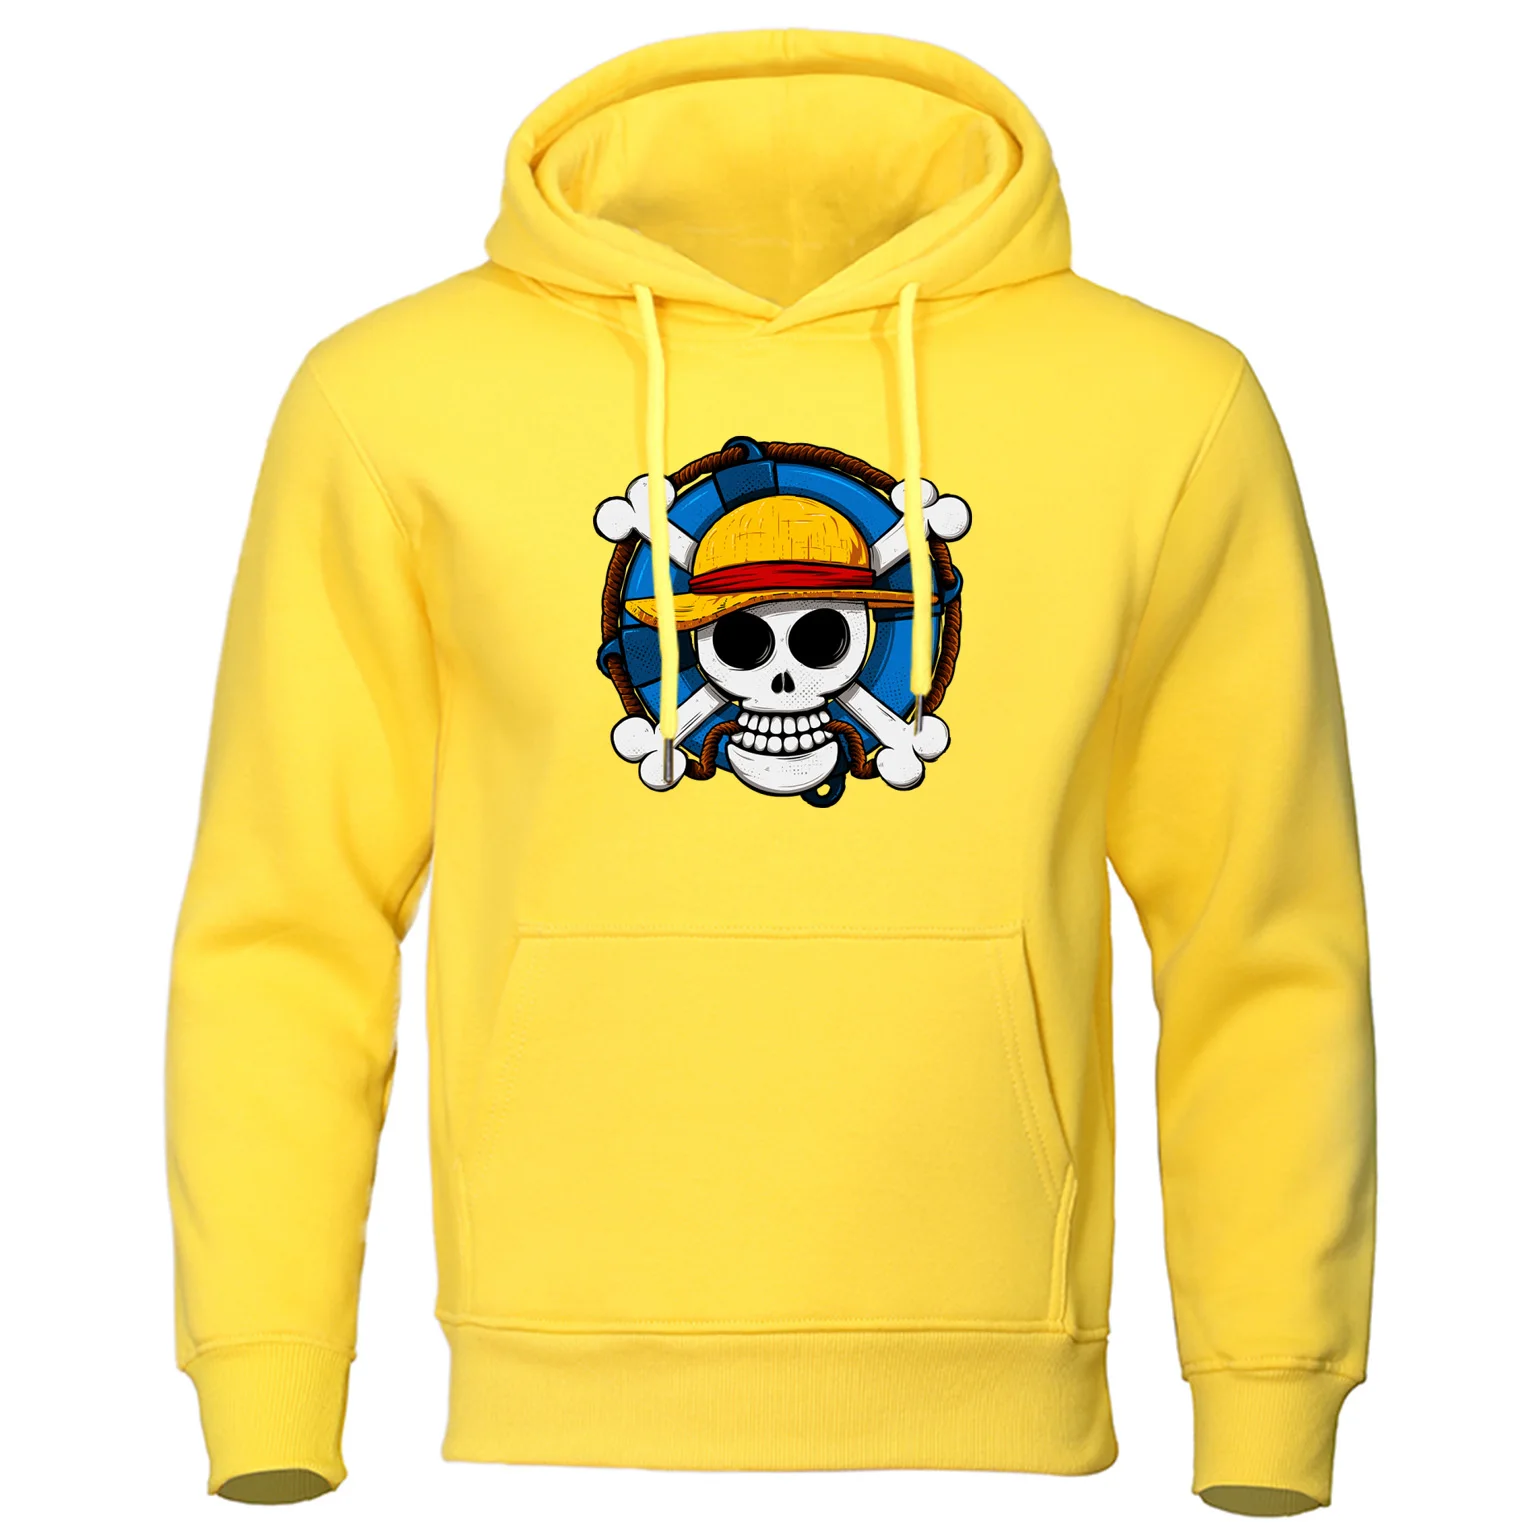 Цельный осенний пуловер с черепом Луффи, мужские толстовки с капюшоном, свитшоты для мужчин, японское аниме, Harajuku, хип-хоп стиль, толстовки, пальто - Цвет: yellow 6